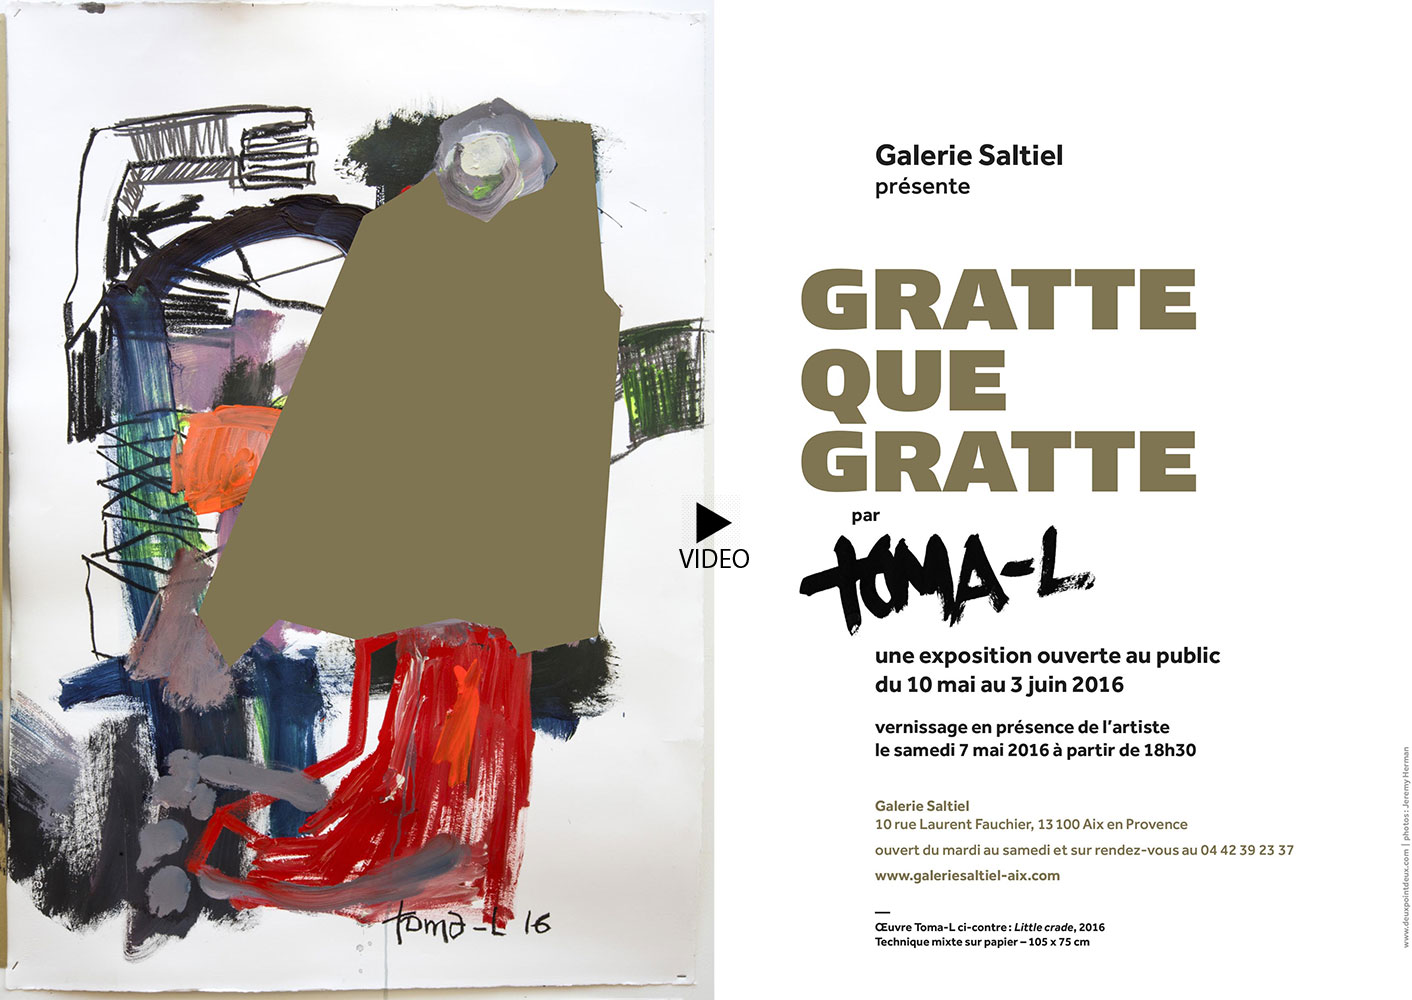 Gratte Que Gratte Vernissage samedi 7 Mai de 18H00 à 22H00 à la Galerie Saltiel - 10 rue Laurent Fauchier - 13100 Aix en Provence.
 
Photographie et Video : Jérémy Herman.